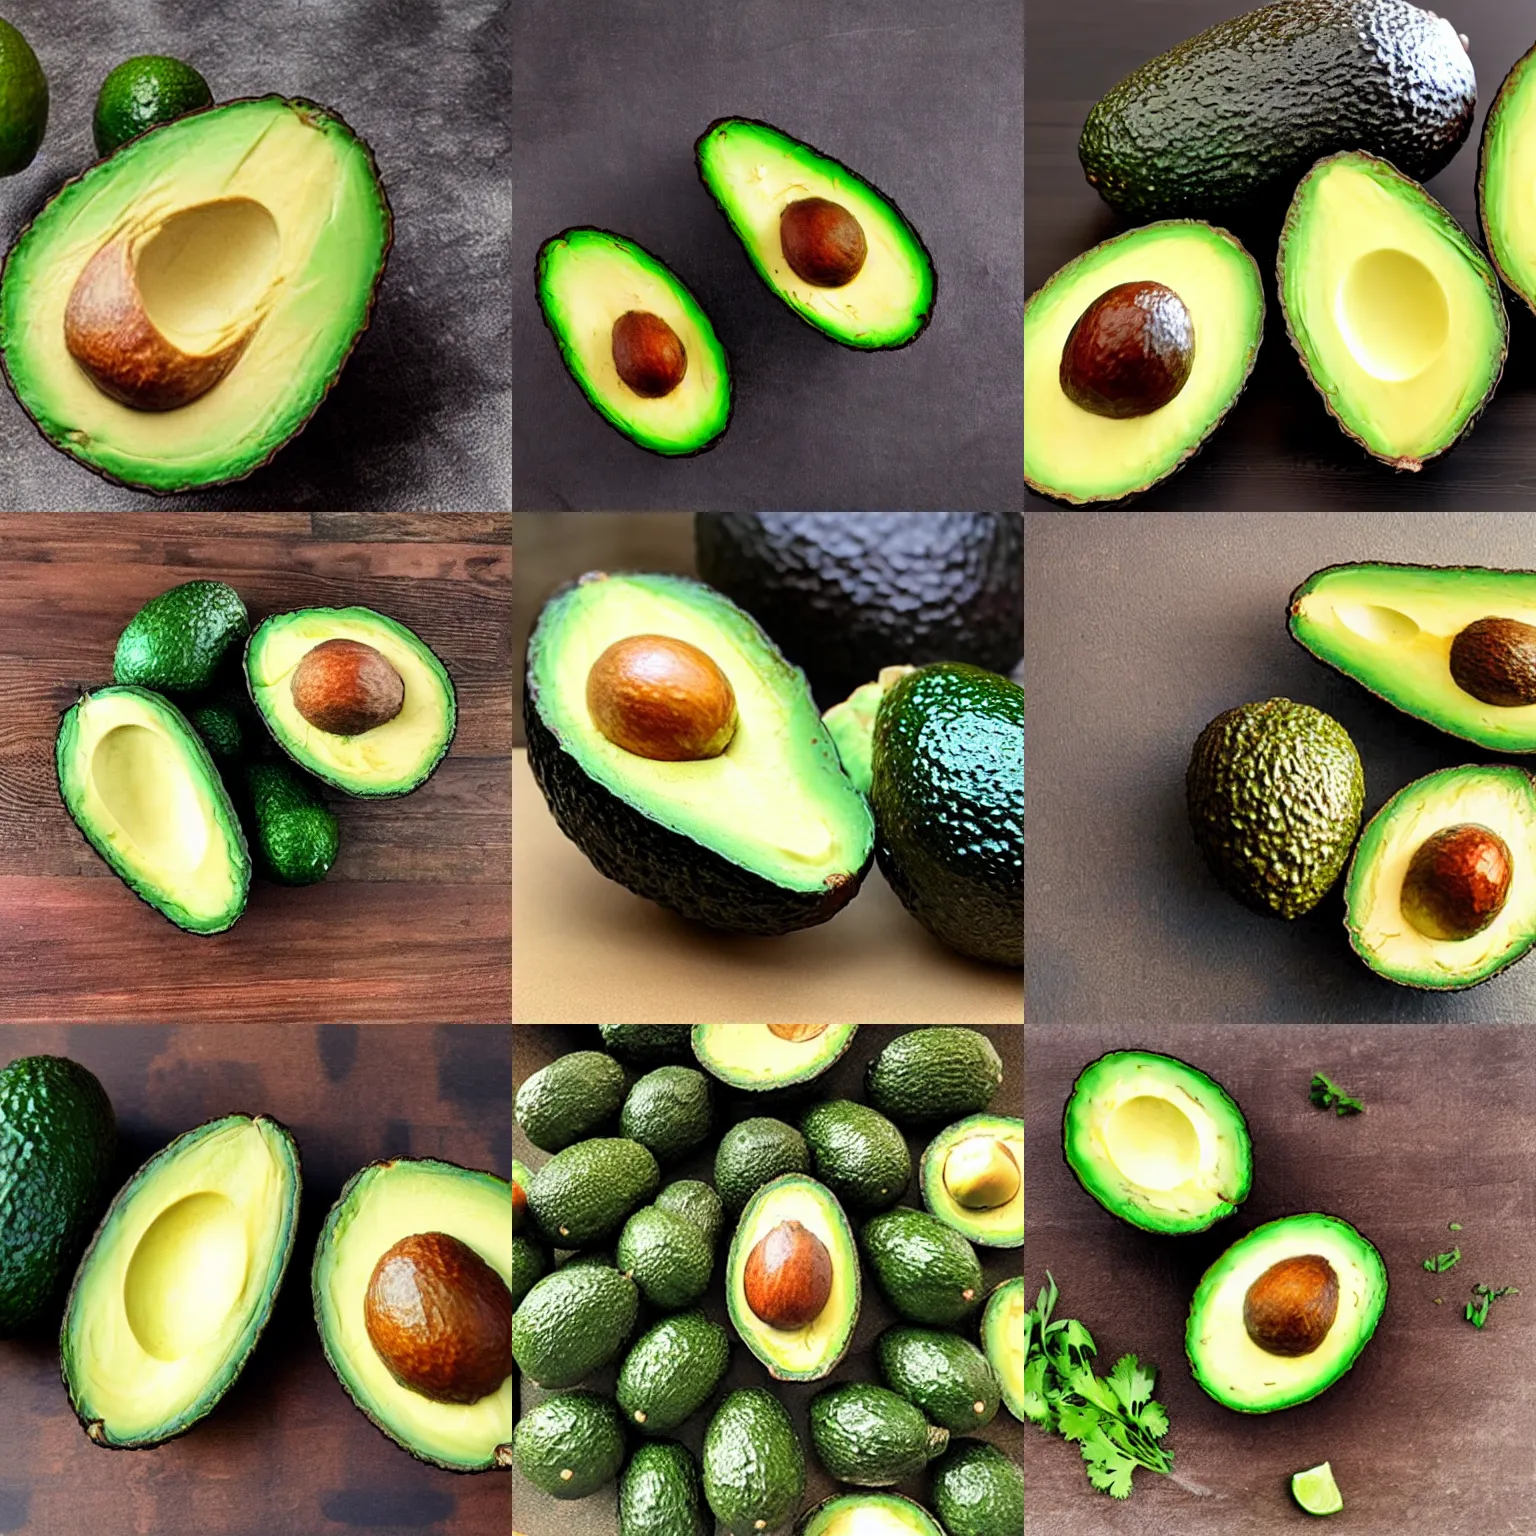 Prompt: nicocado avocado